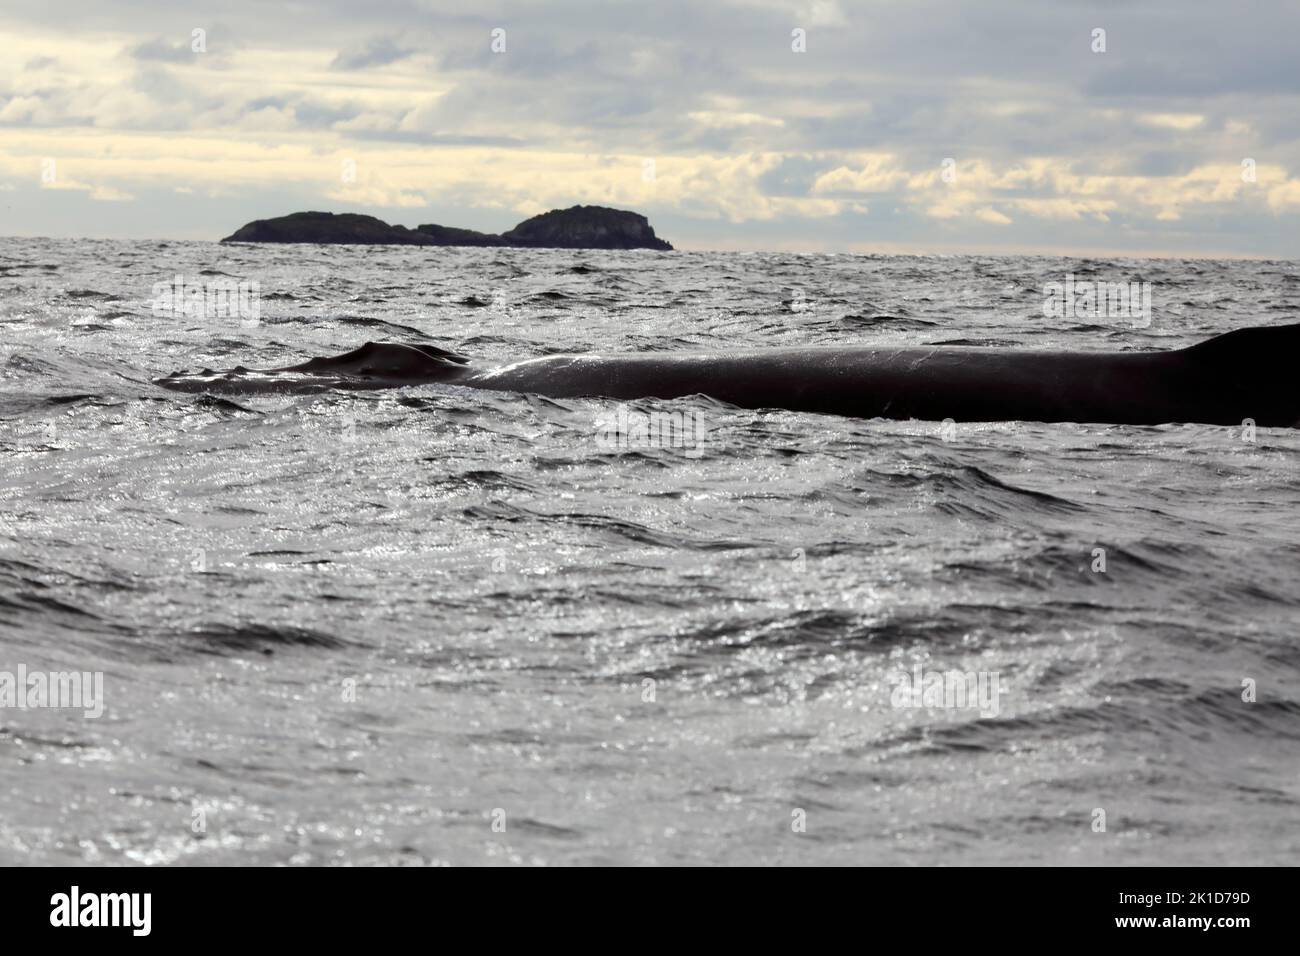 Tête et corps de baleine à bosse au large des îles de Mull & Iona dans les Hébrides intérieures d'Écosse Banque D'Images